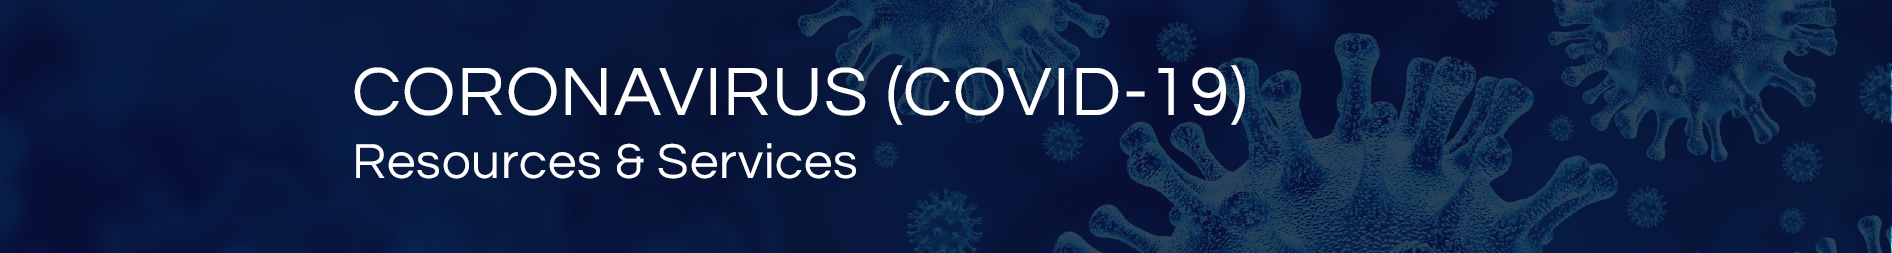 Coronavirus Resources & Services